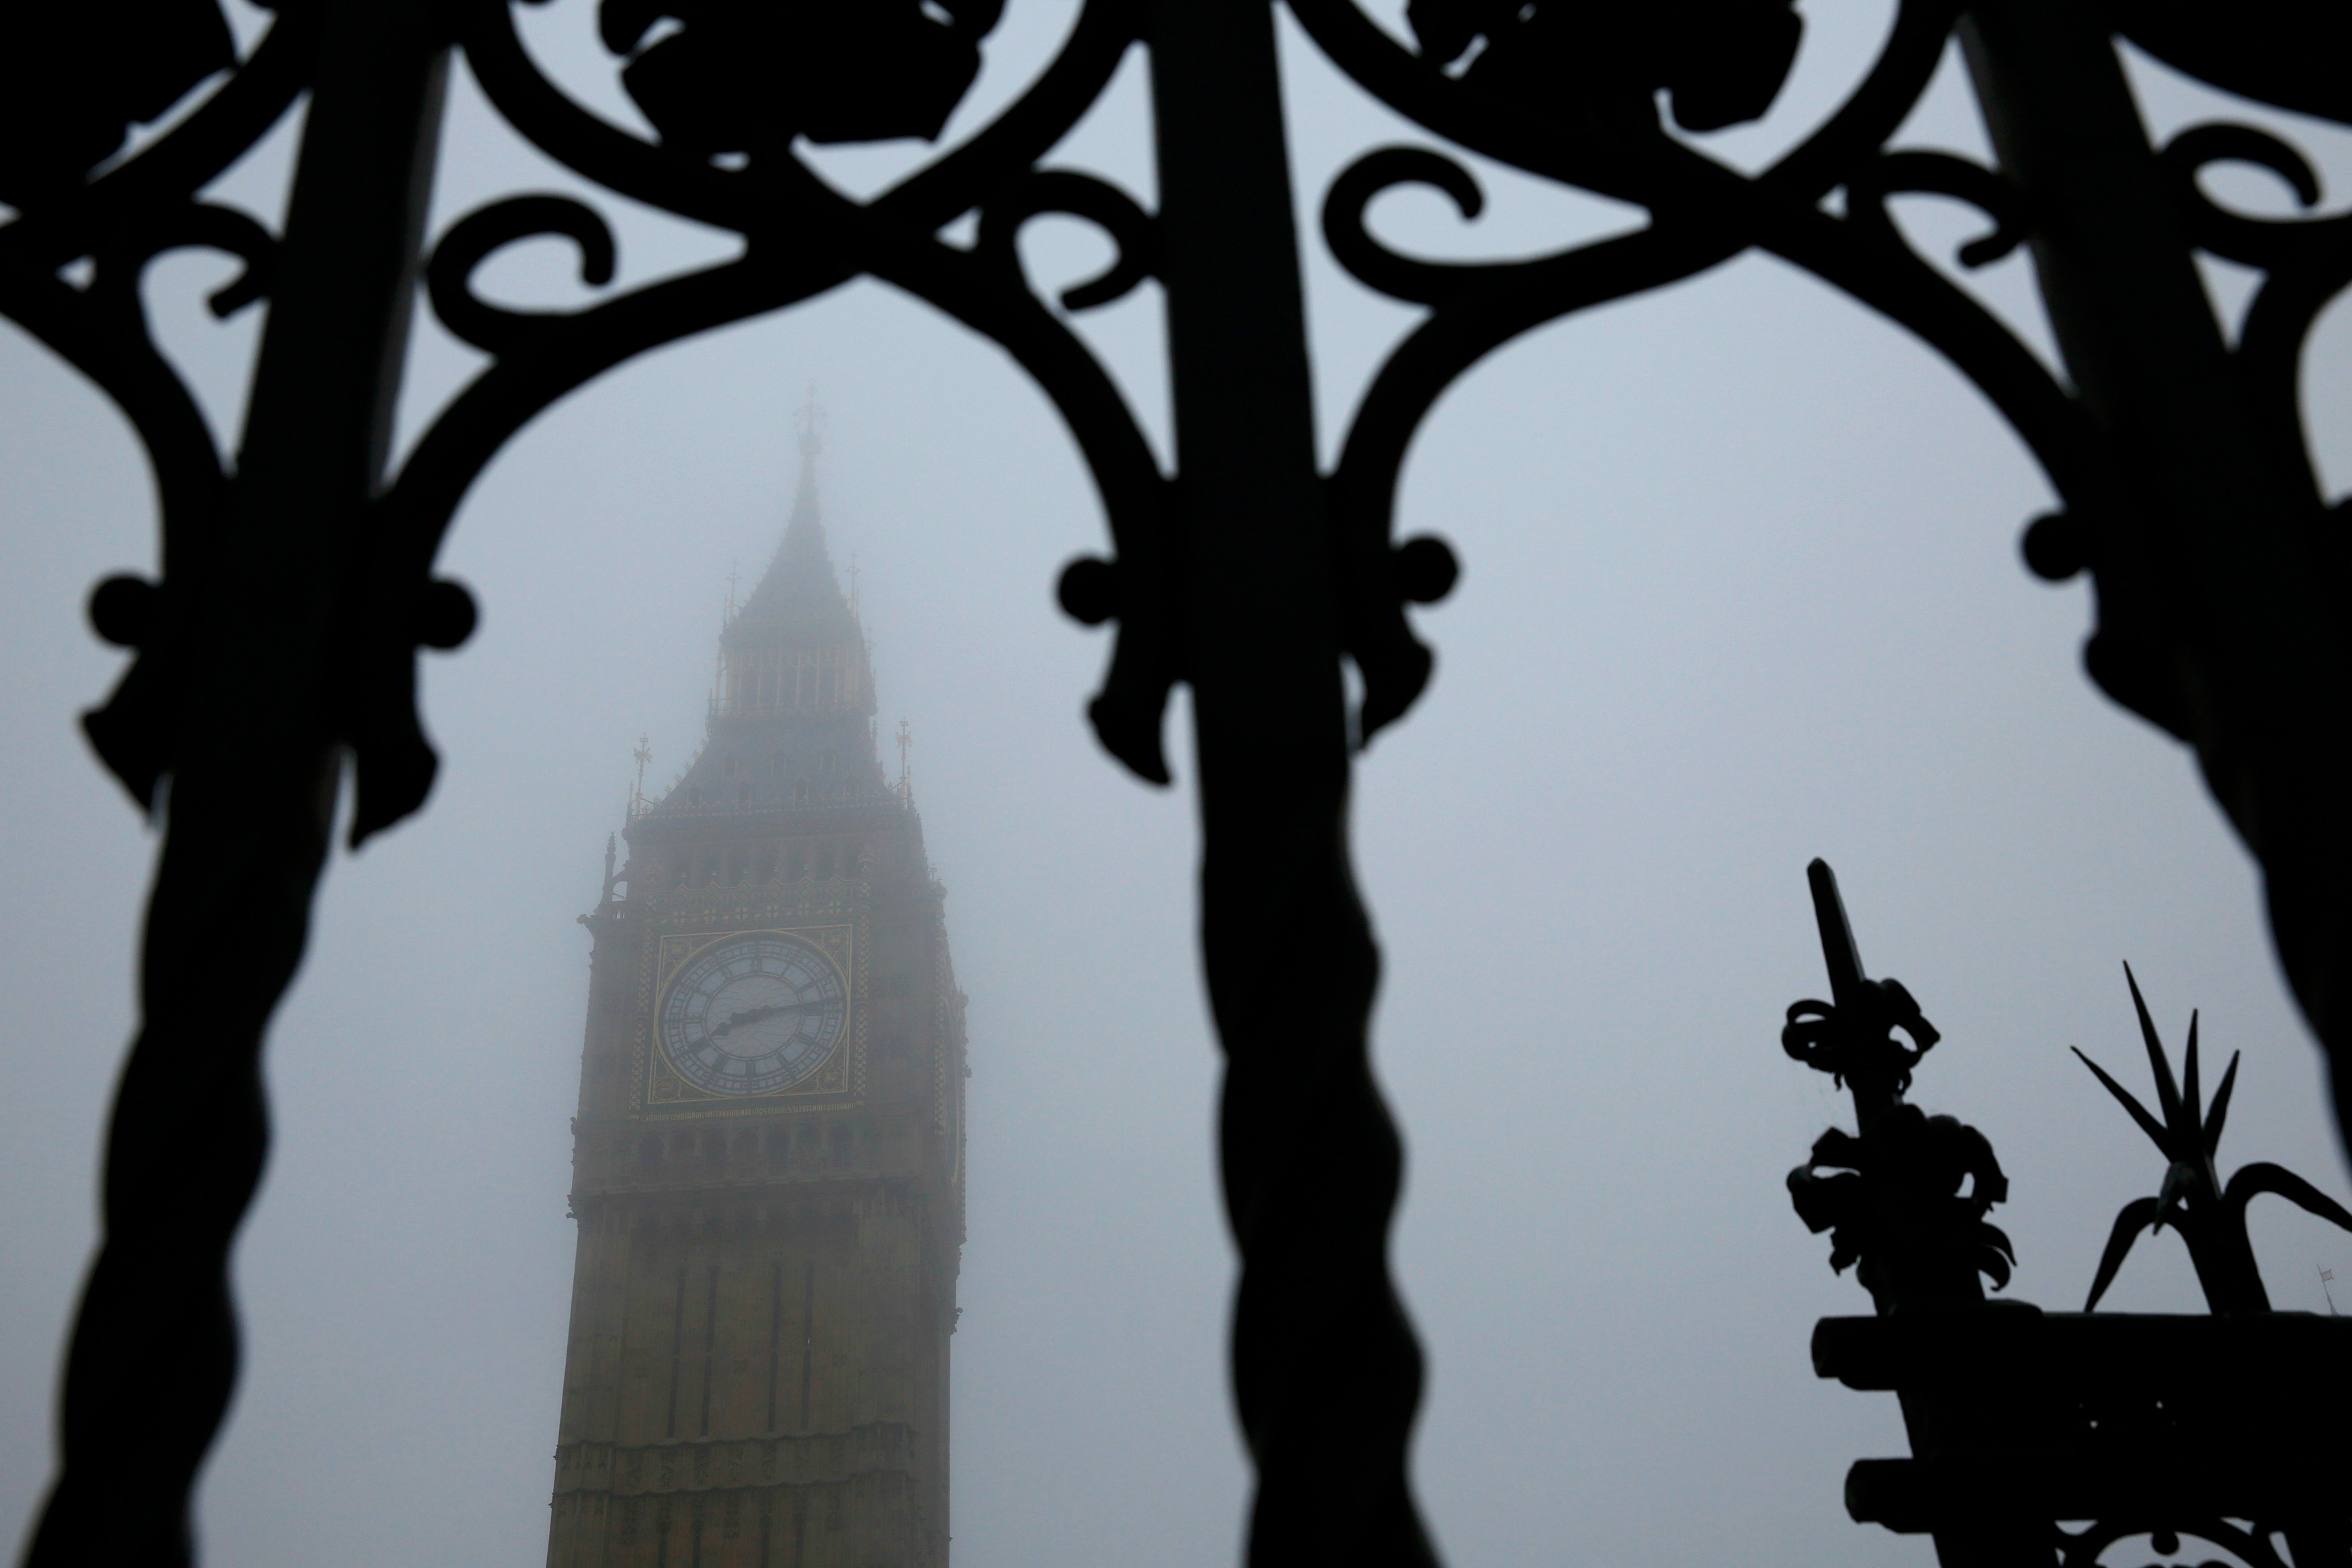 Cancelados decenas de vuelos a Londres debido a la intensa niebla